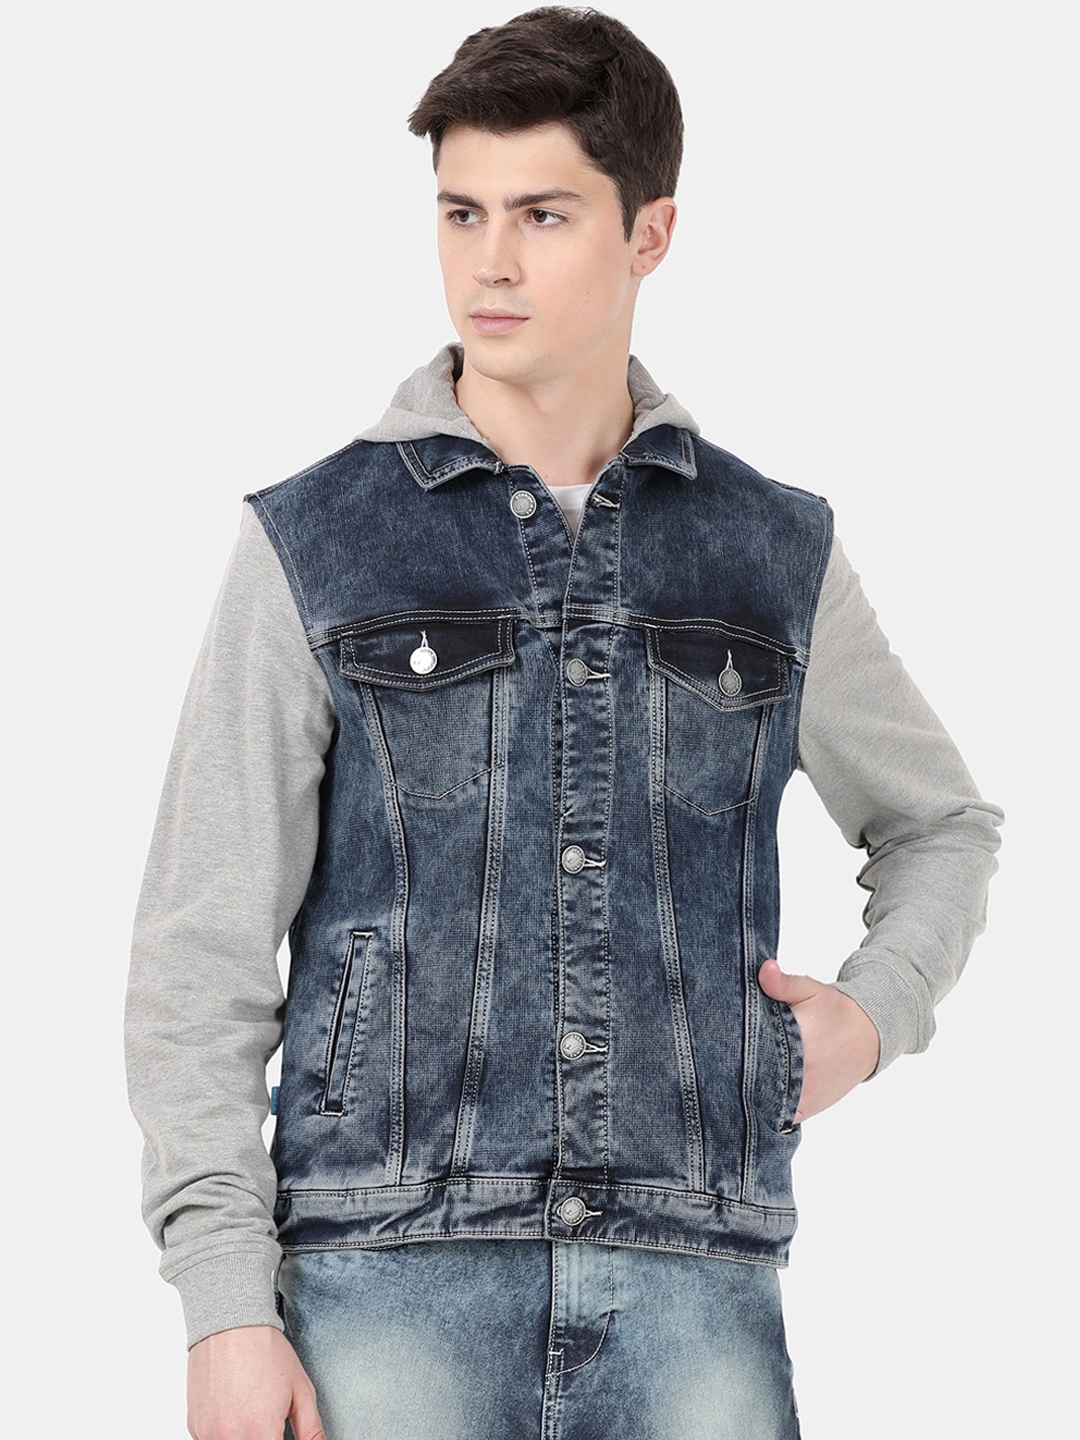 Buy Llak Jeans Men Blue Solid Denim Jacket - Jackets for Men 13319034 ...